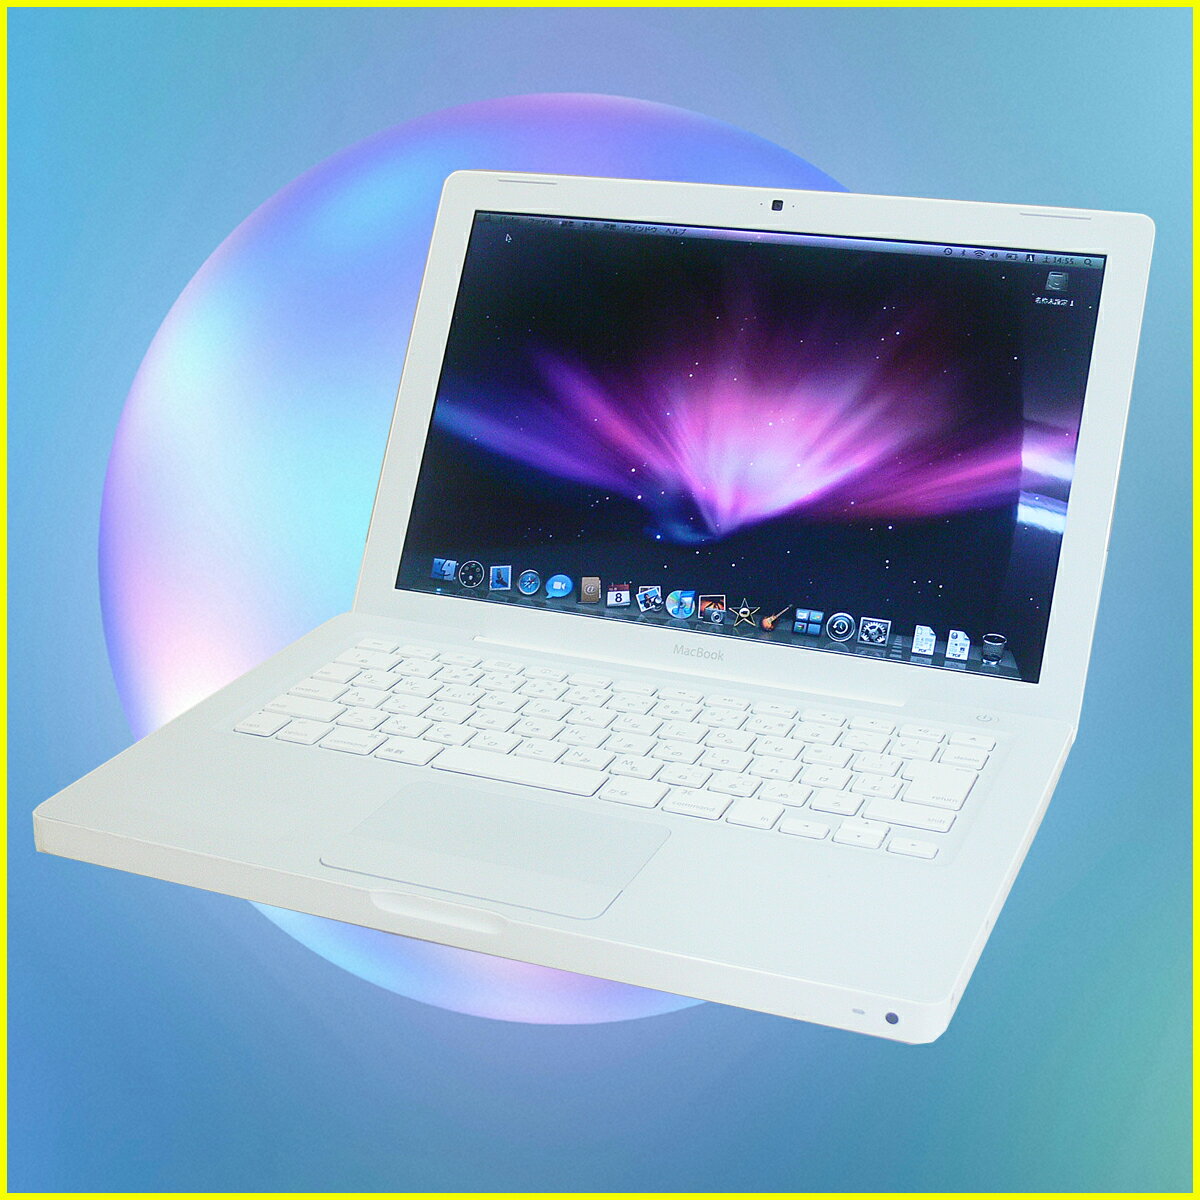 macbook a1181 update os